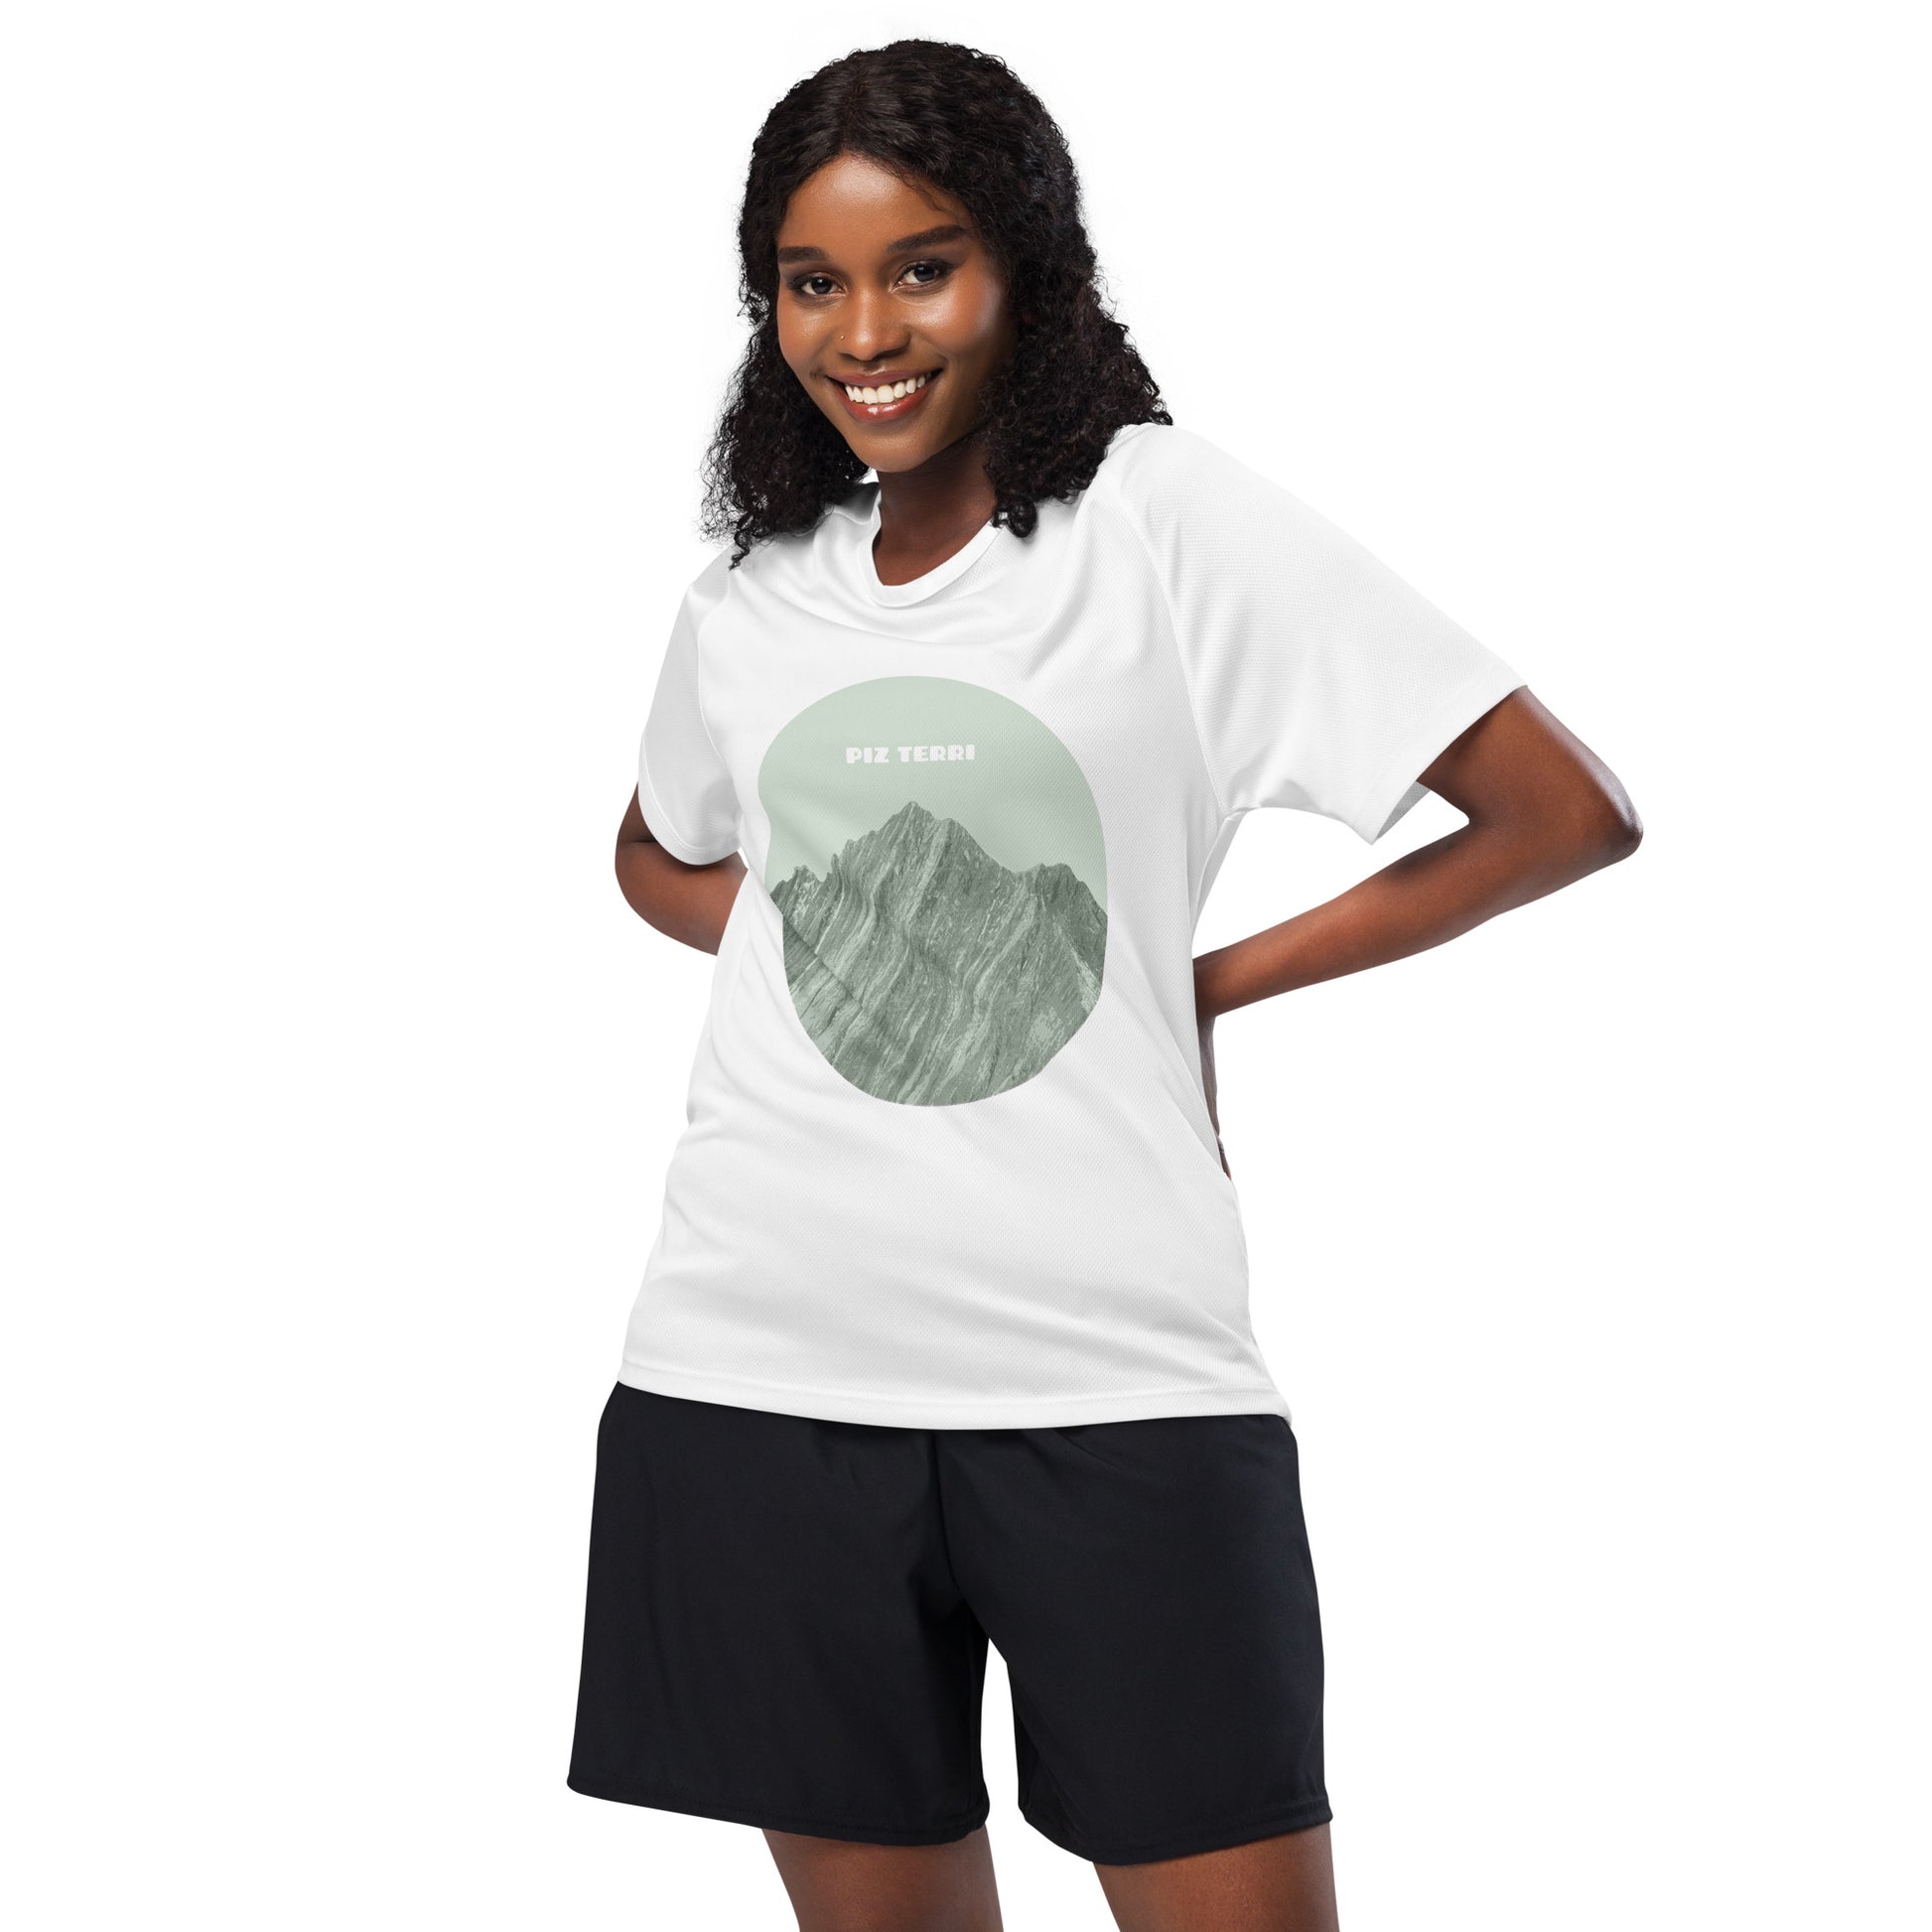 Frau in Sportbekleidung. Auf ihrem weissen Sport-Shirt sehen wir einen grünen Aufdruck des Piz Terri in Graubünden.